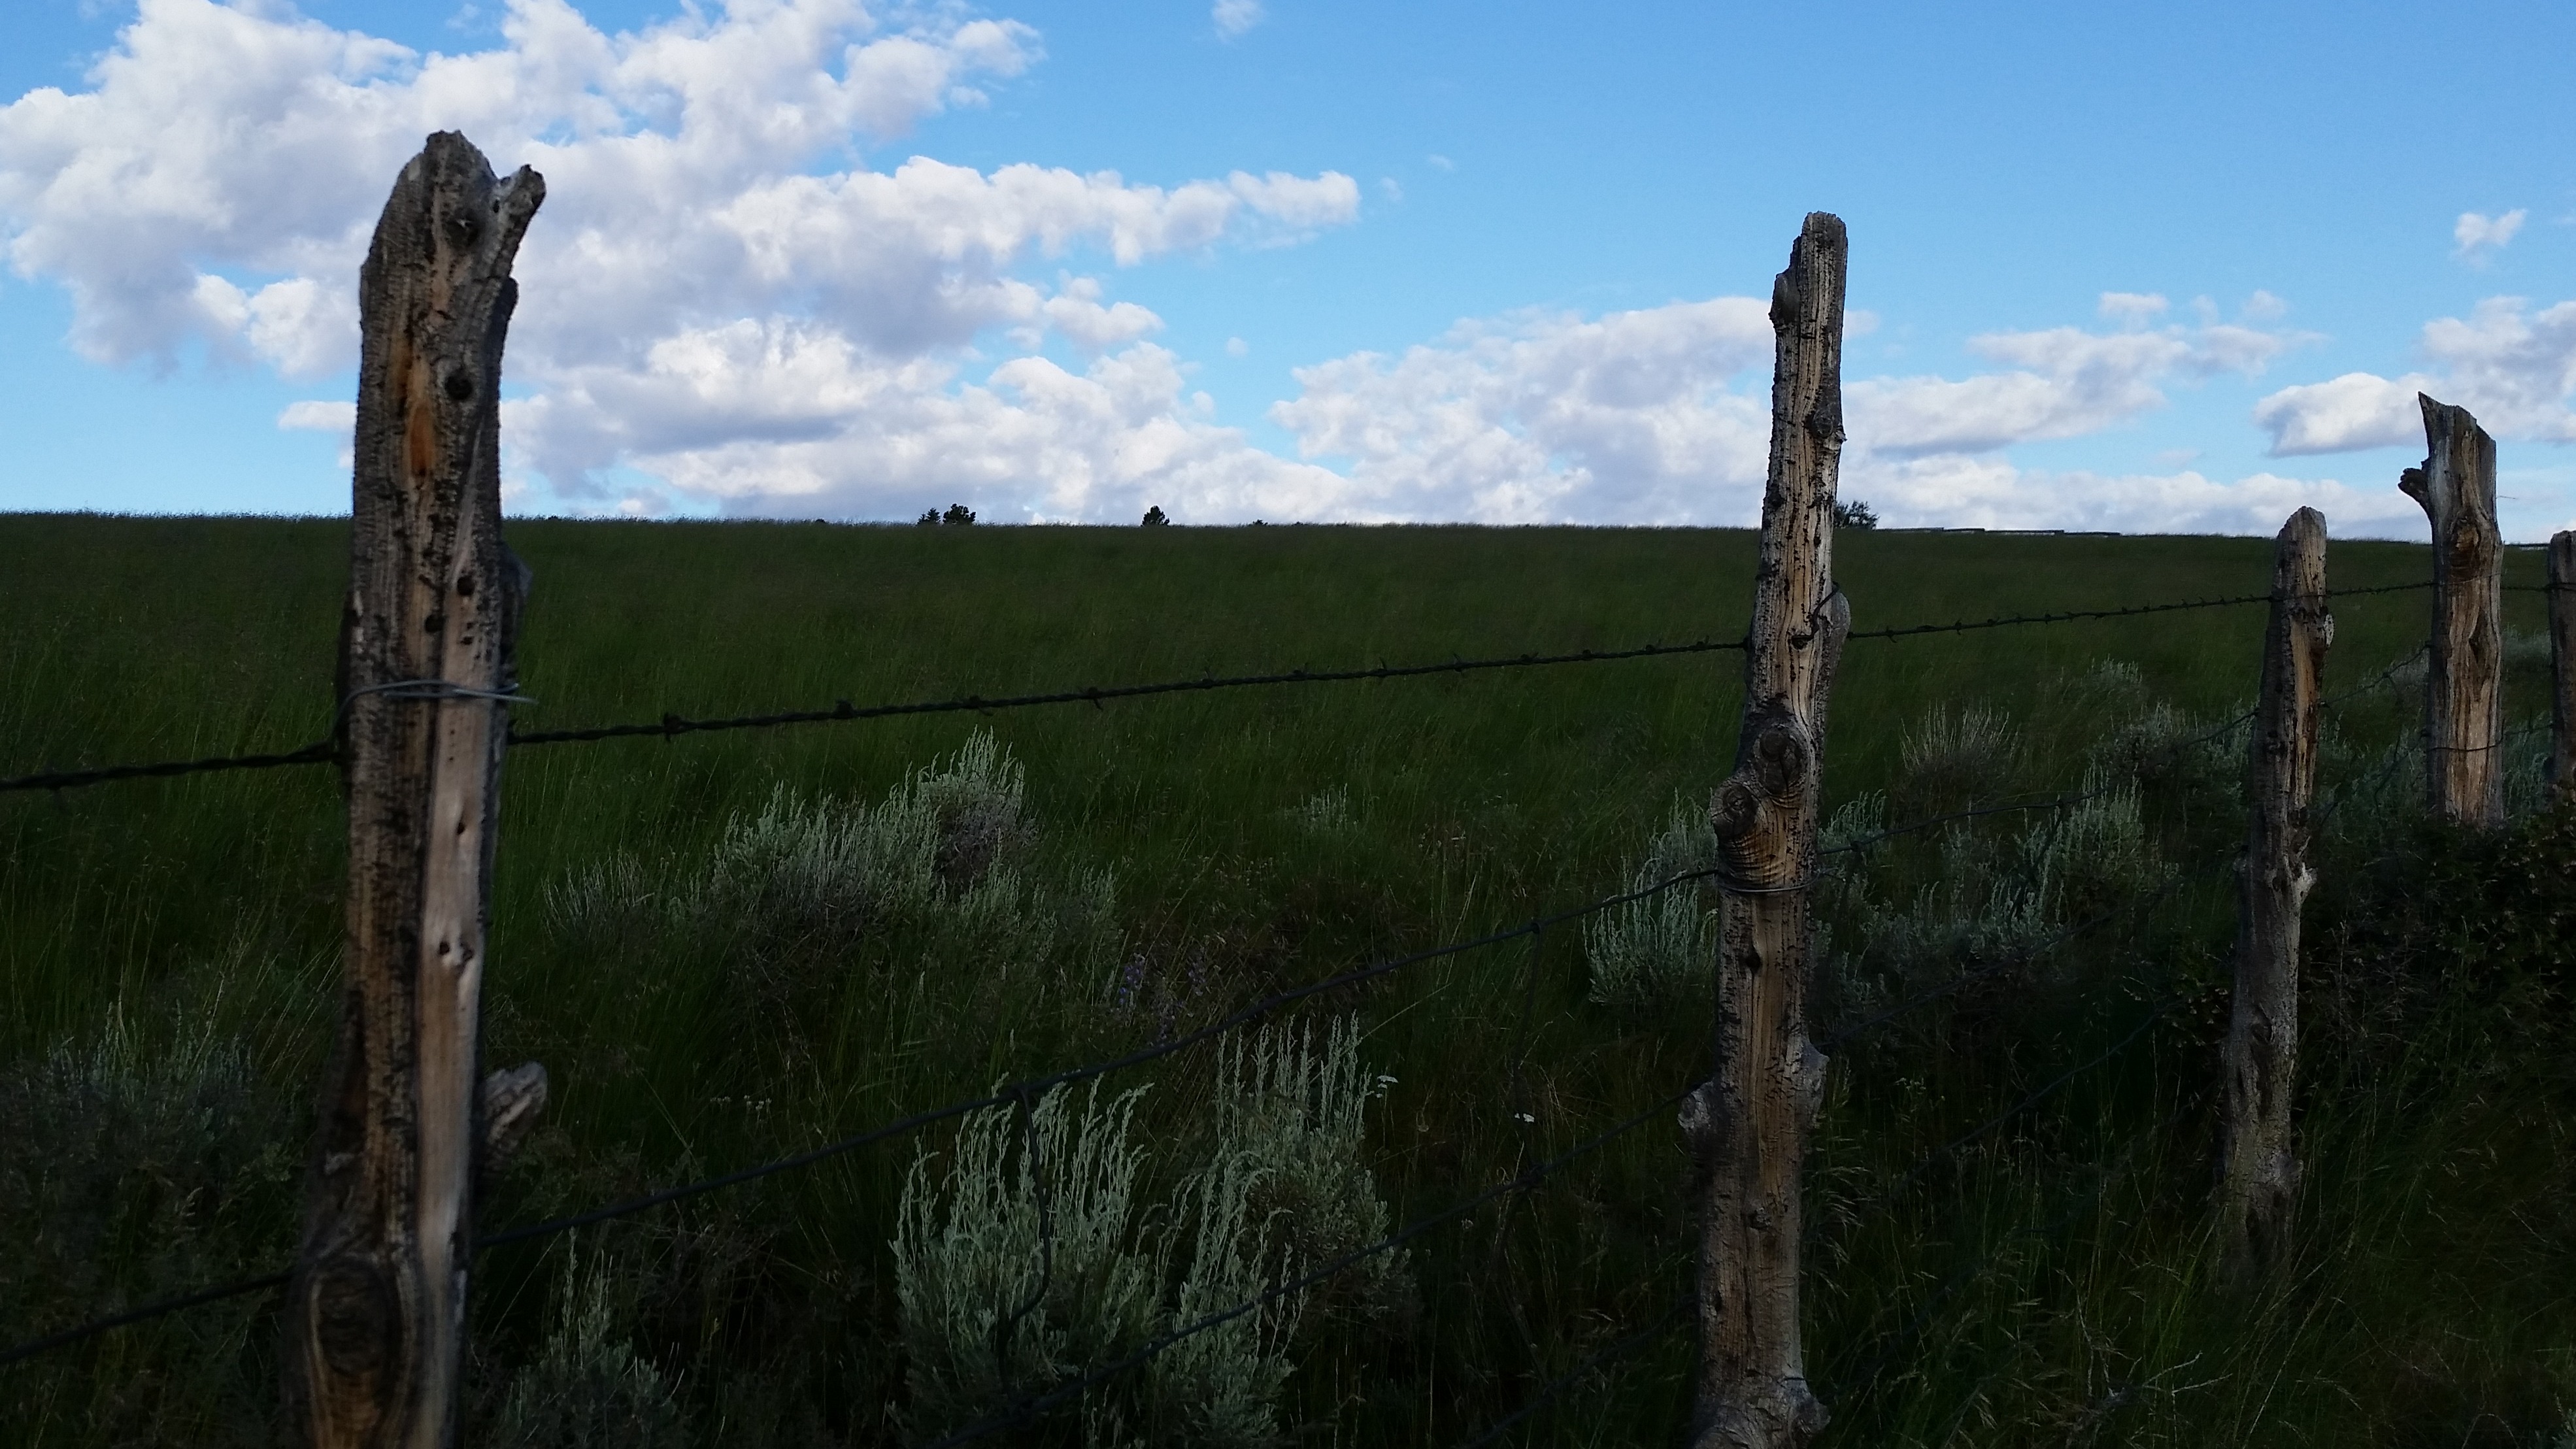 Fence line on Tavaputs Plateau